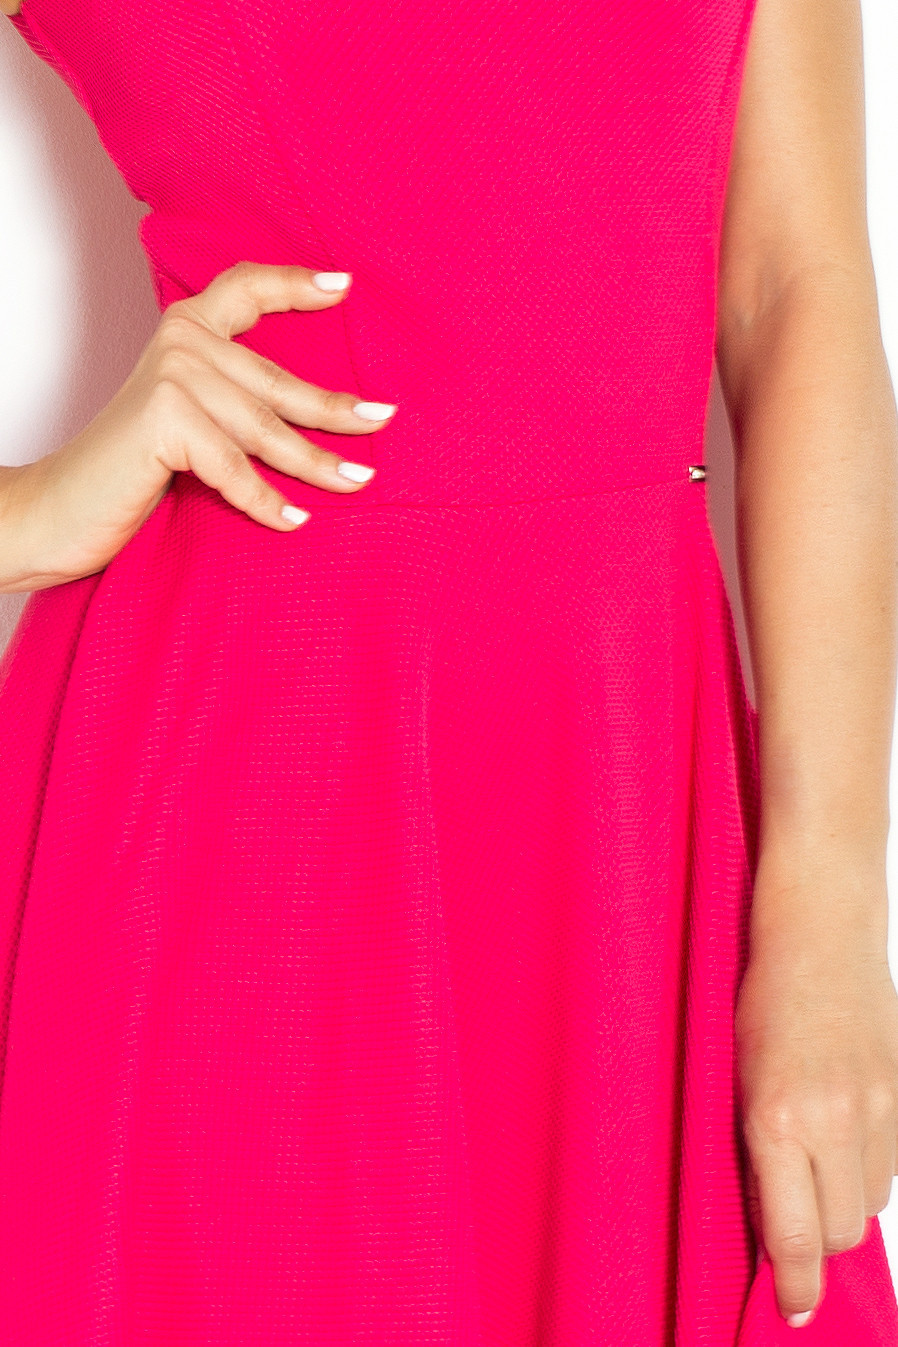 Společenské šaty luxusní s kolovou sukní středně dlouhé malinové - Malinová / S - Numoco S růžova